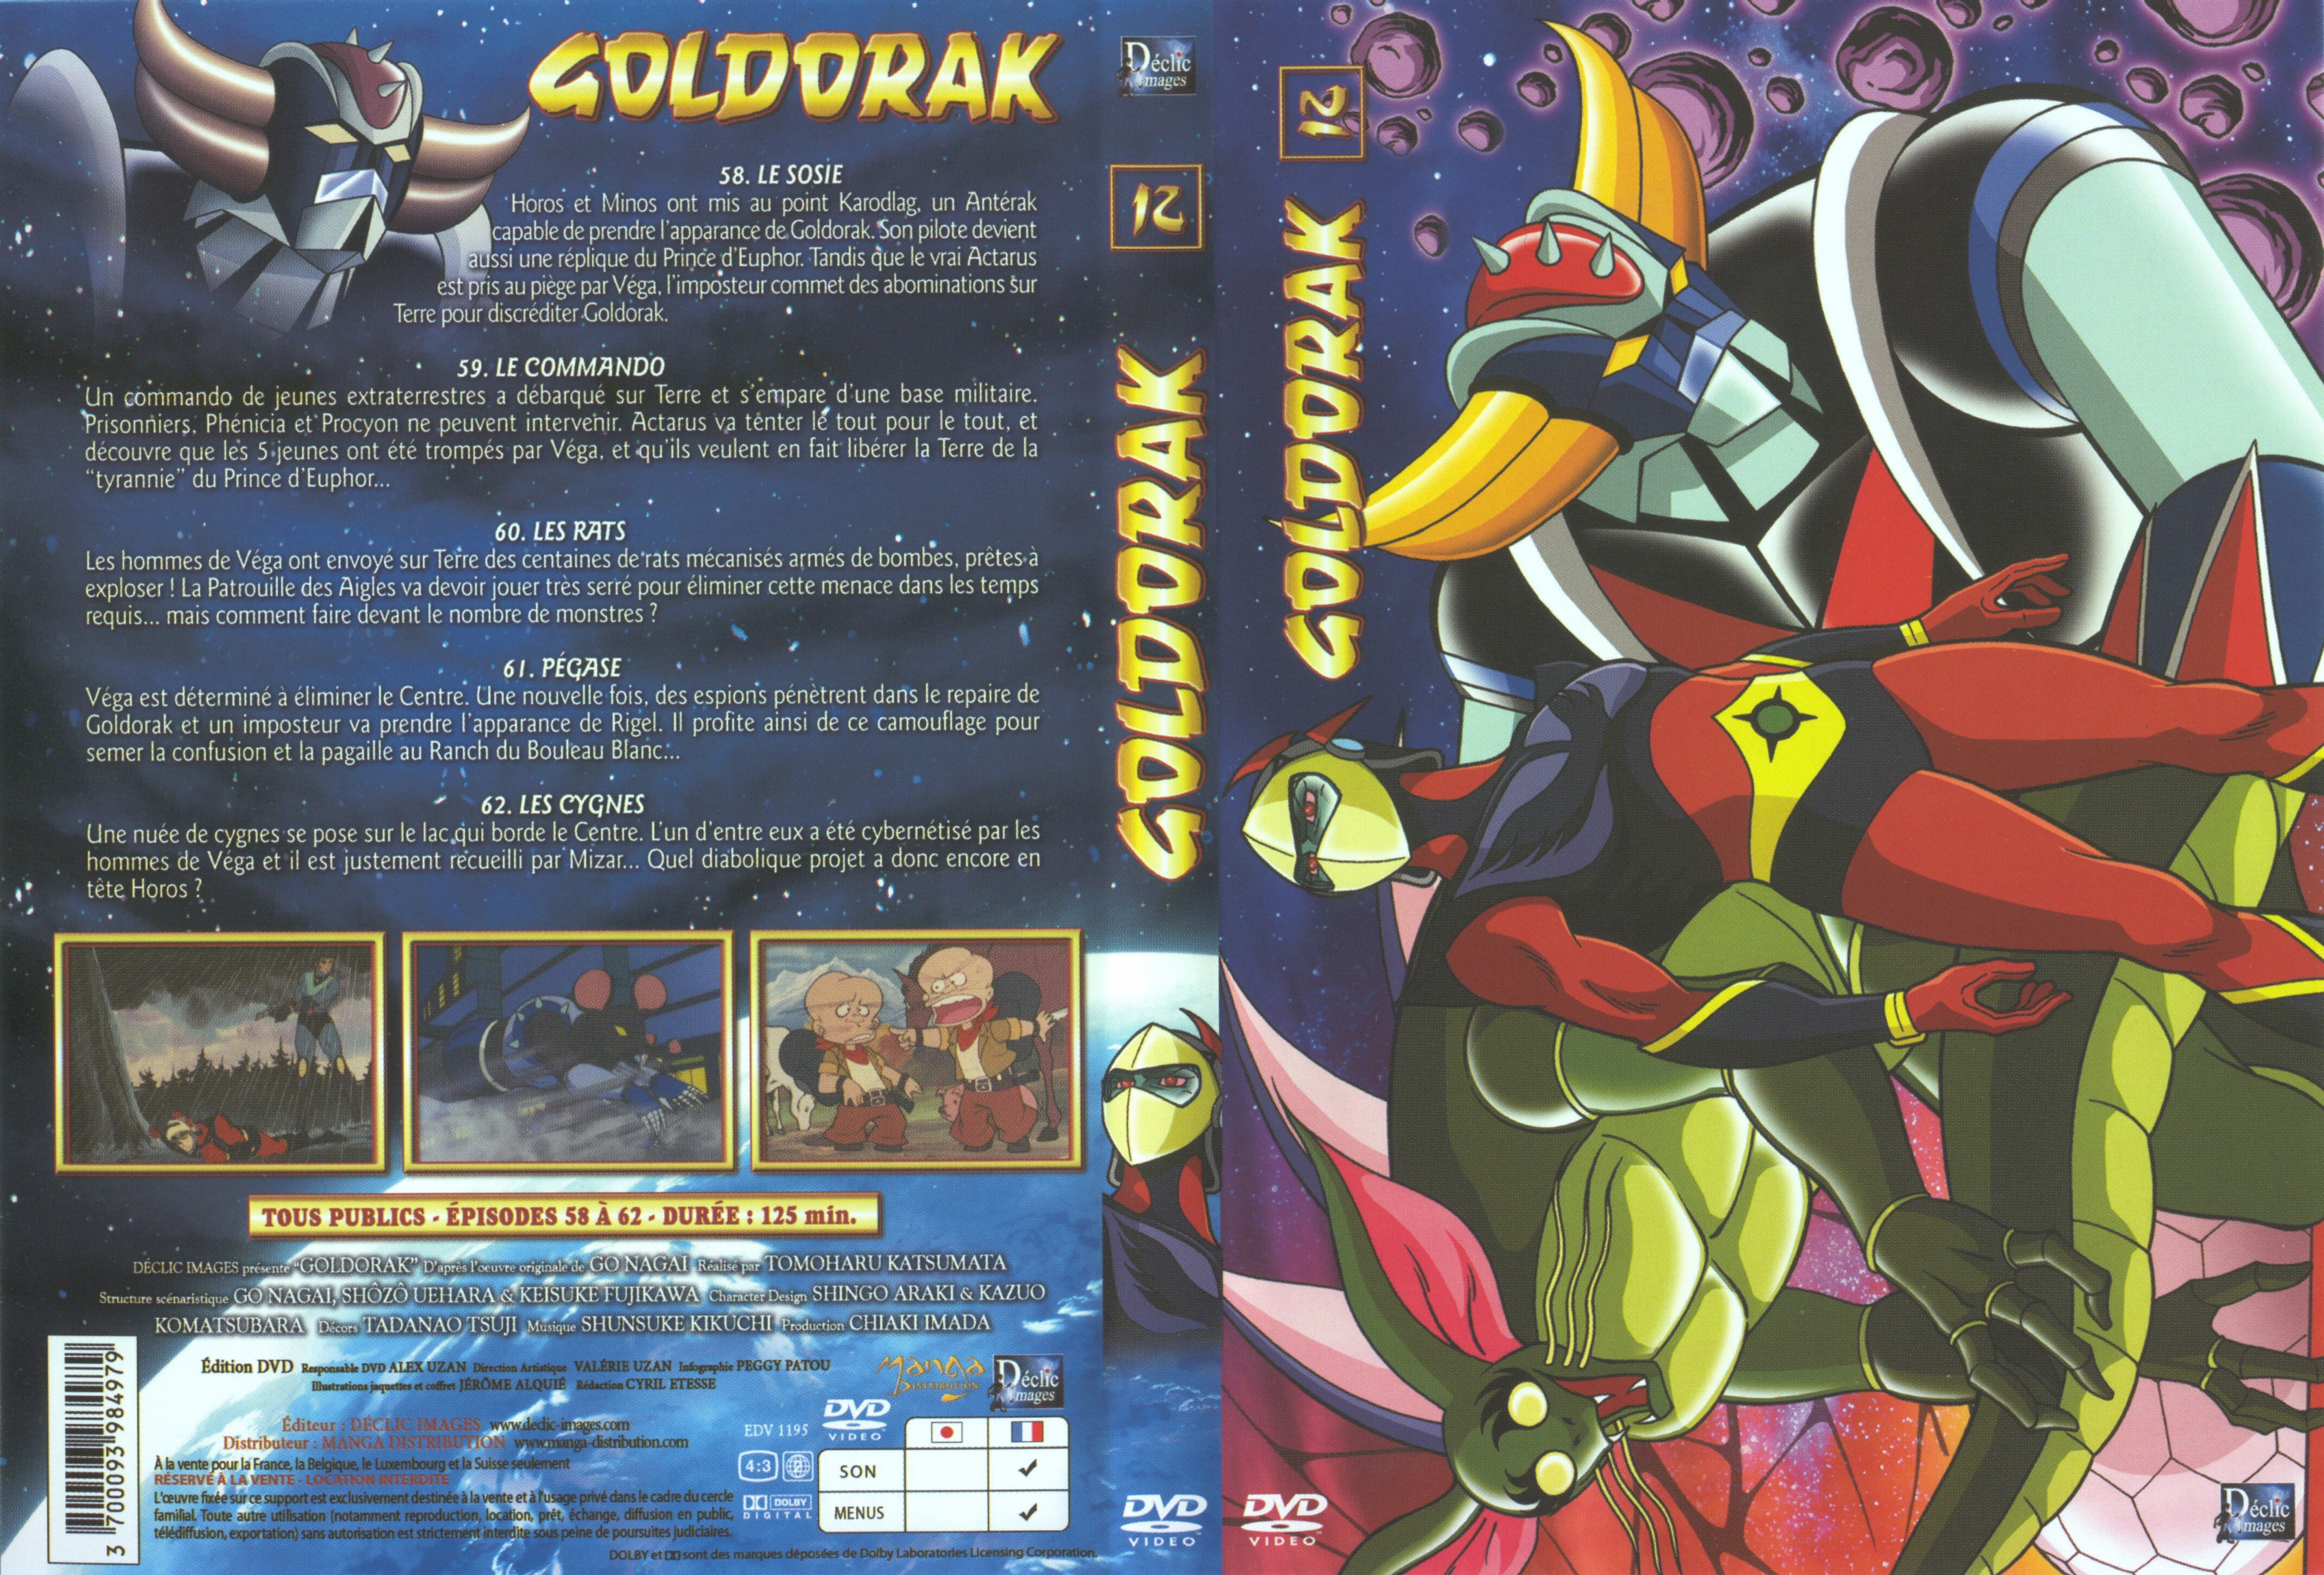 Jaquette DVD Goldorak vol 12